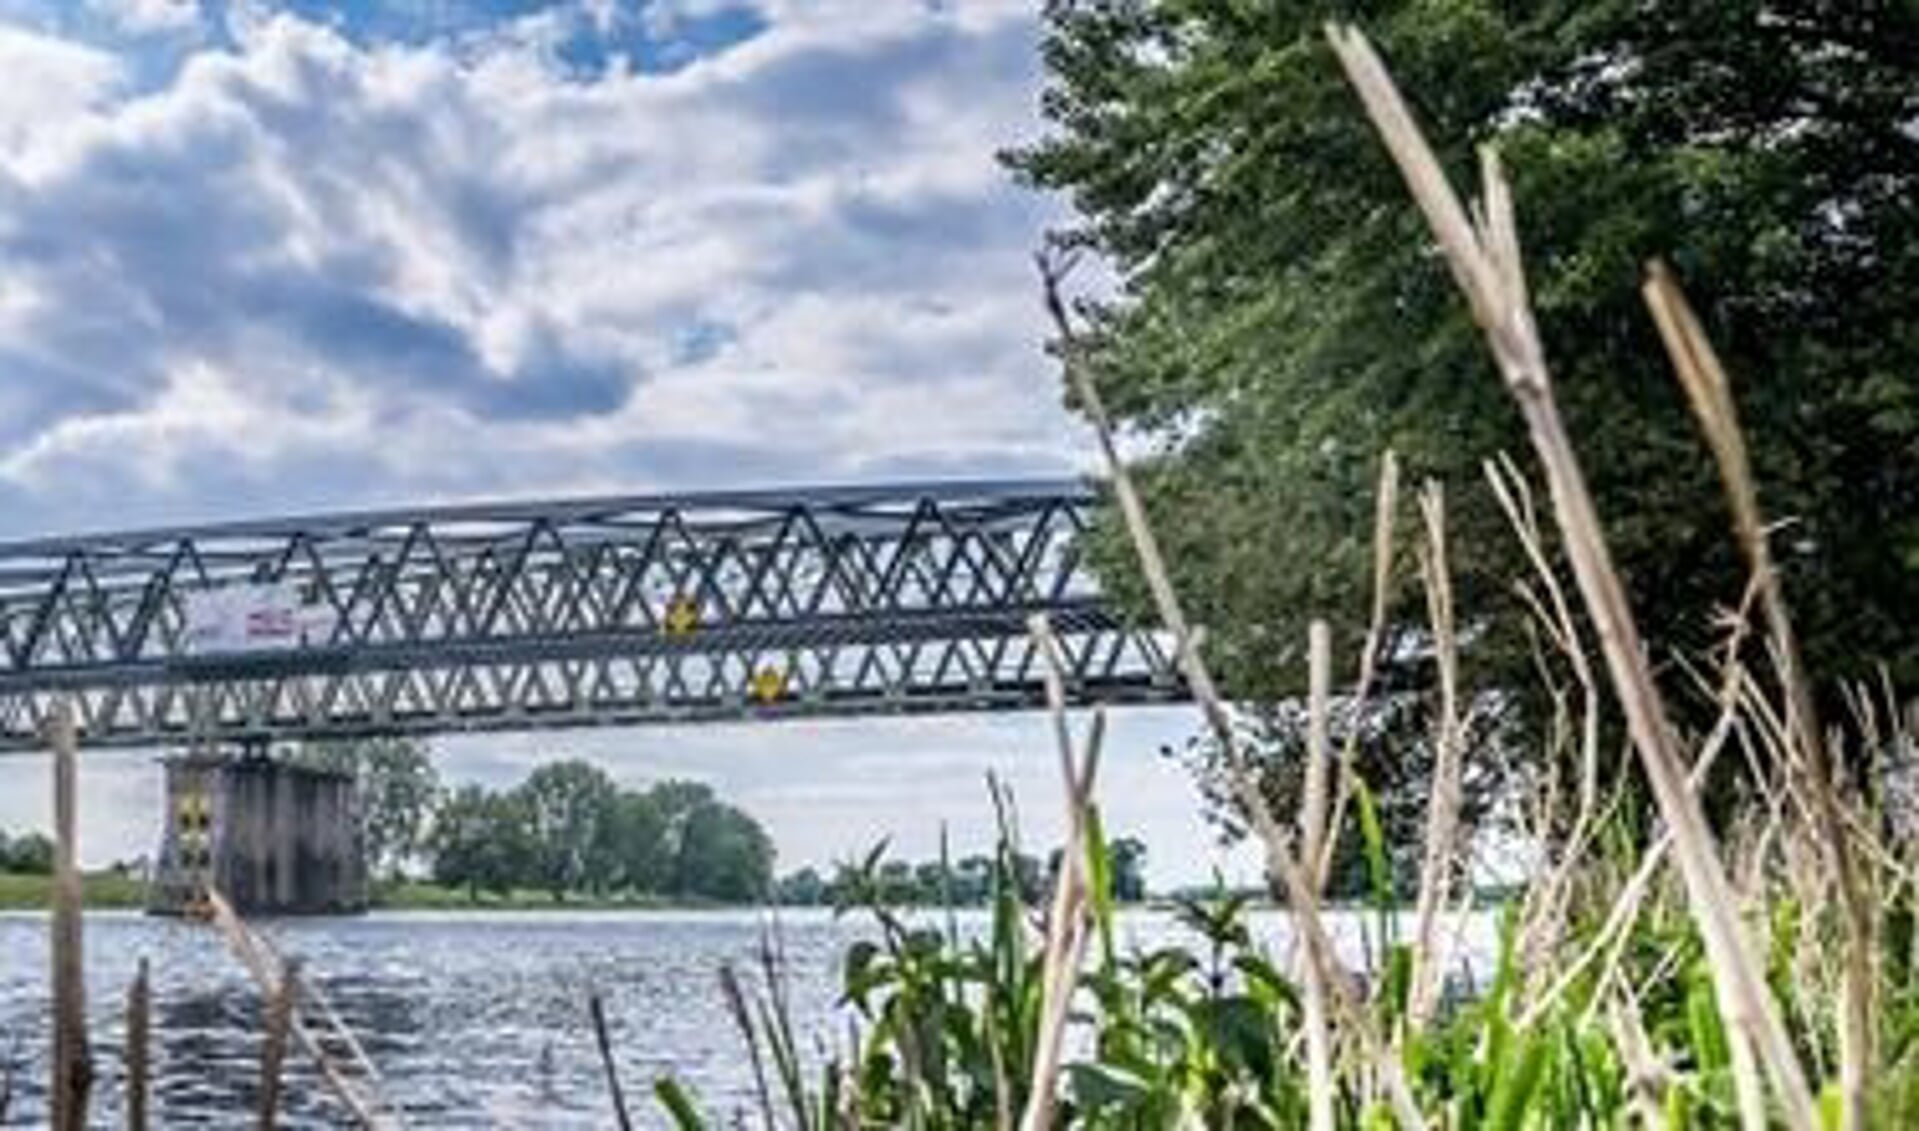 Onderdeel van het MaasWaalpad is een nieuwe brug over de Maas, De Maasover